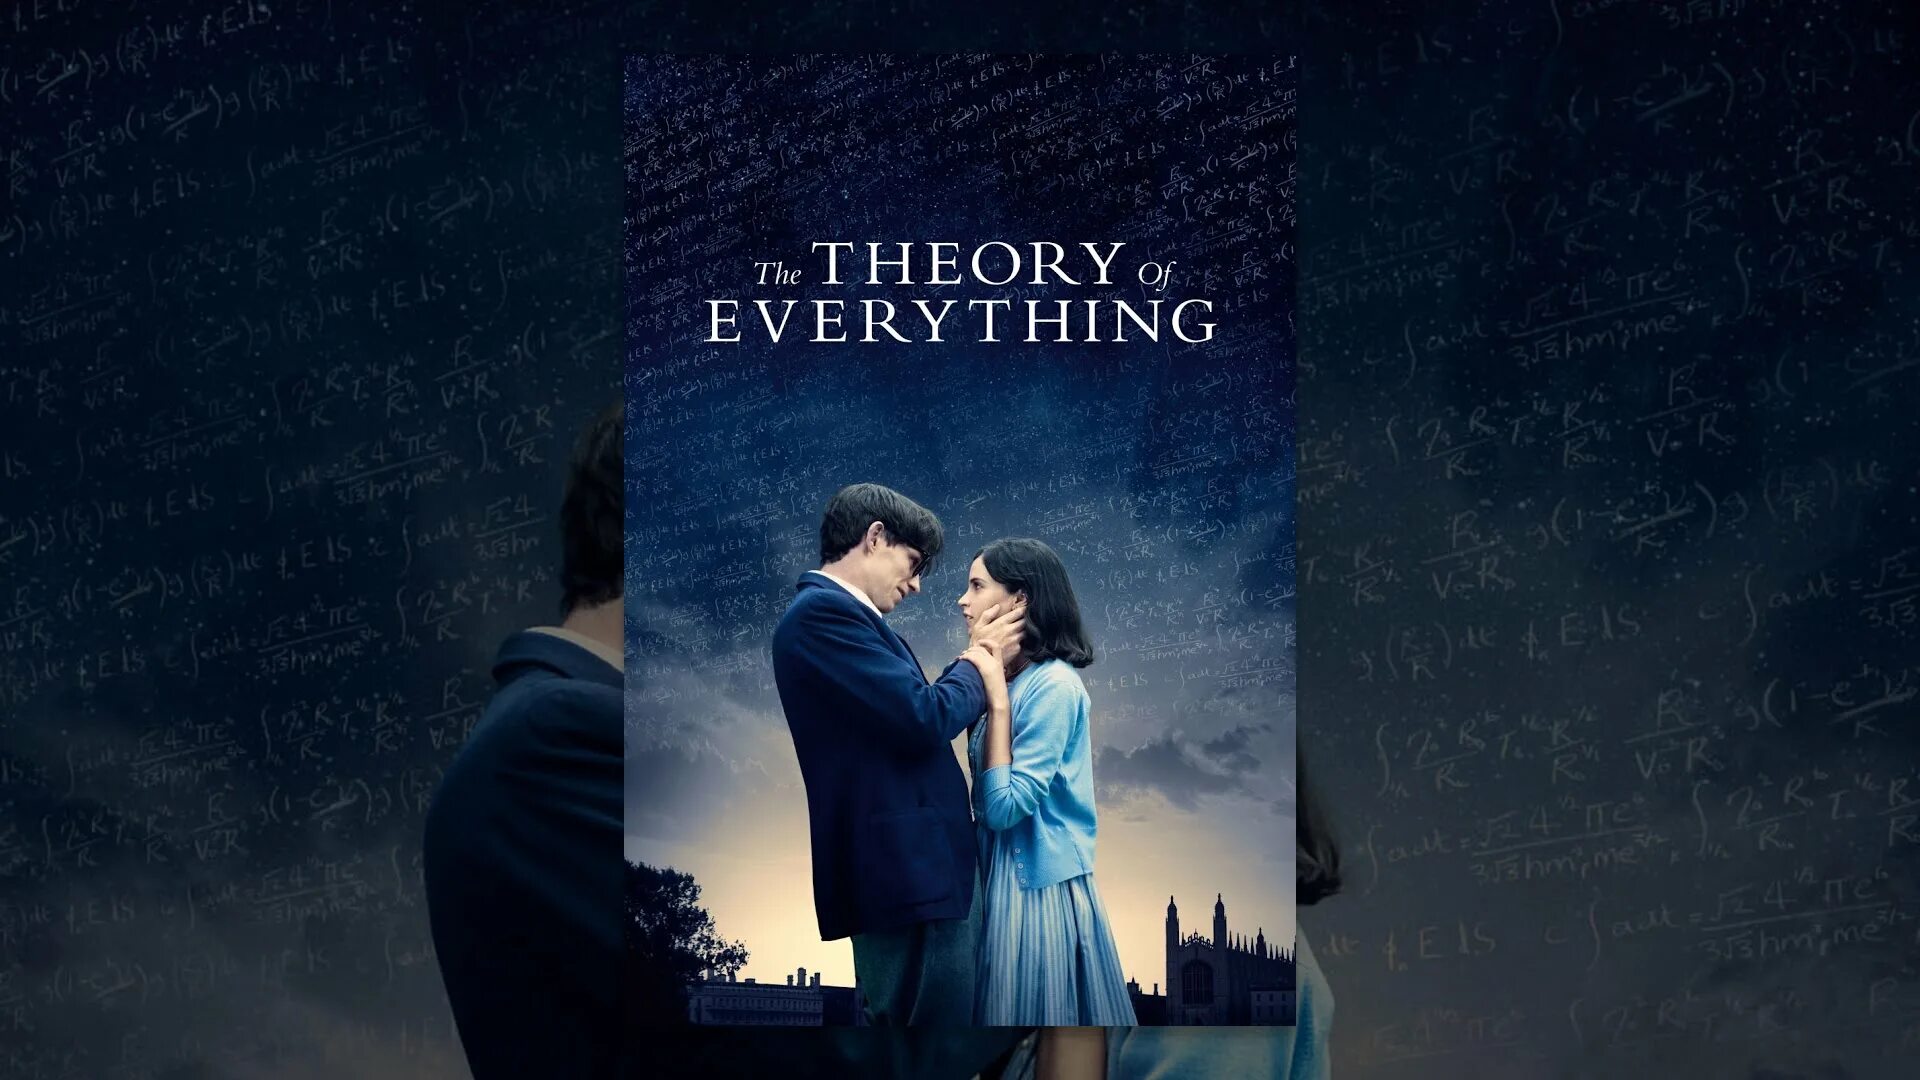 The theory of everything. Theory of everything. Theory of everything ютуб. Theory of everything игра. Theory of everything GD.